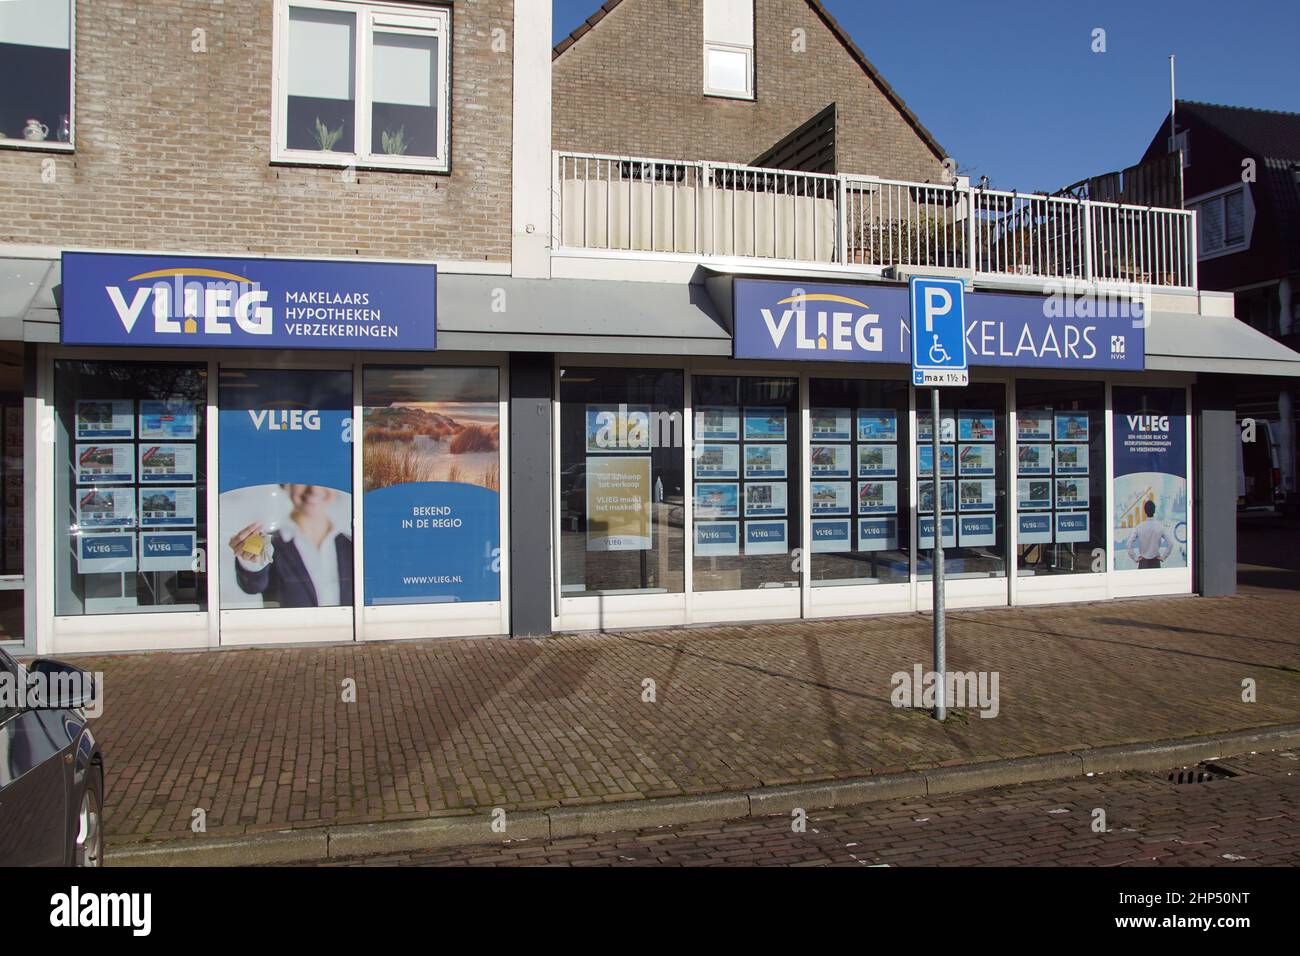 Agence immobilière néerlandaise 'Vlieg' dans le village de Bergen. Derrière les fenêtres des annonces de maisons à vendre. Avant du magasin. Pays-Bas, février Banque D'Images